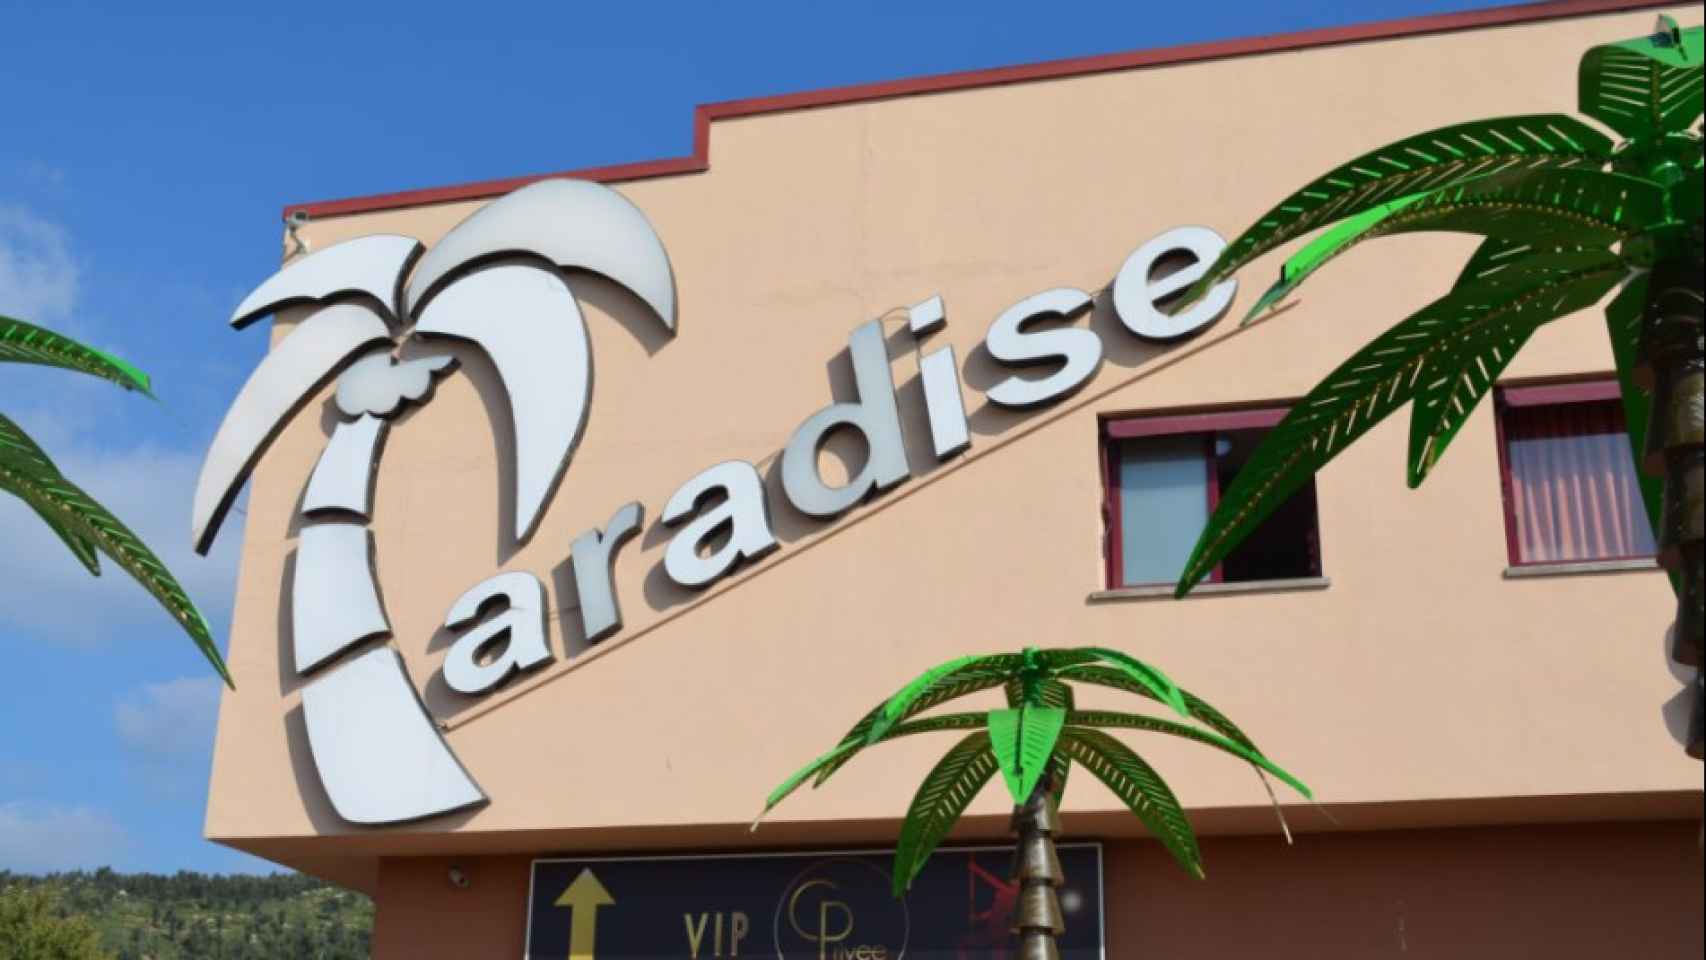 El Paradise, el club de alterne más famoso cerca de La Jonquera, en Girona